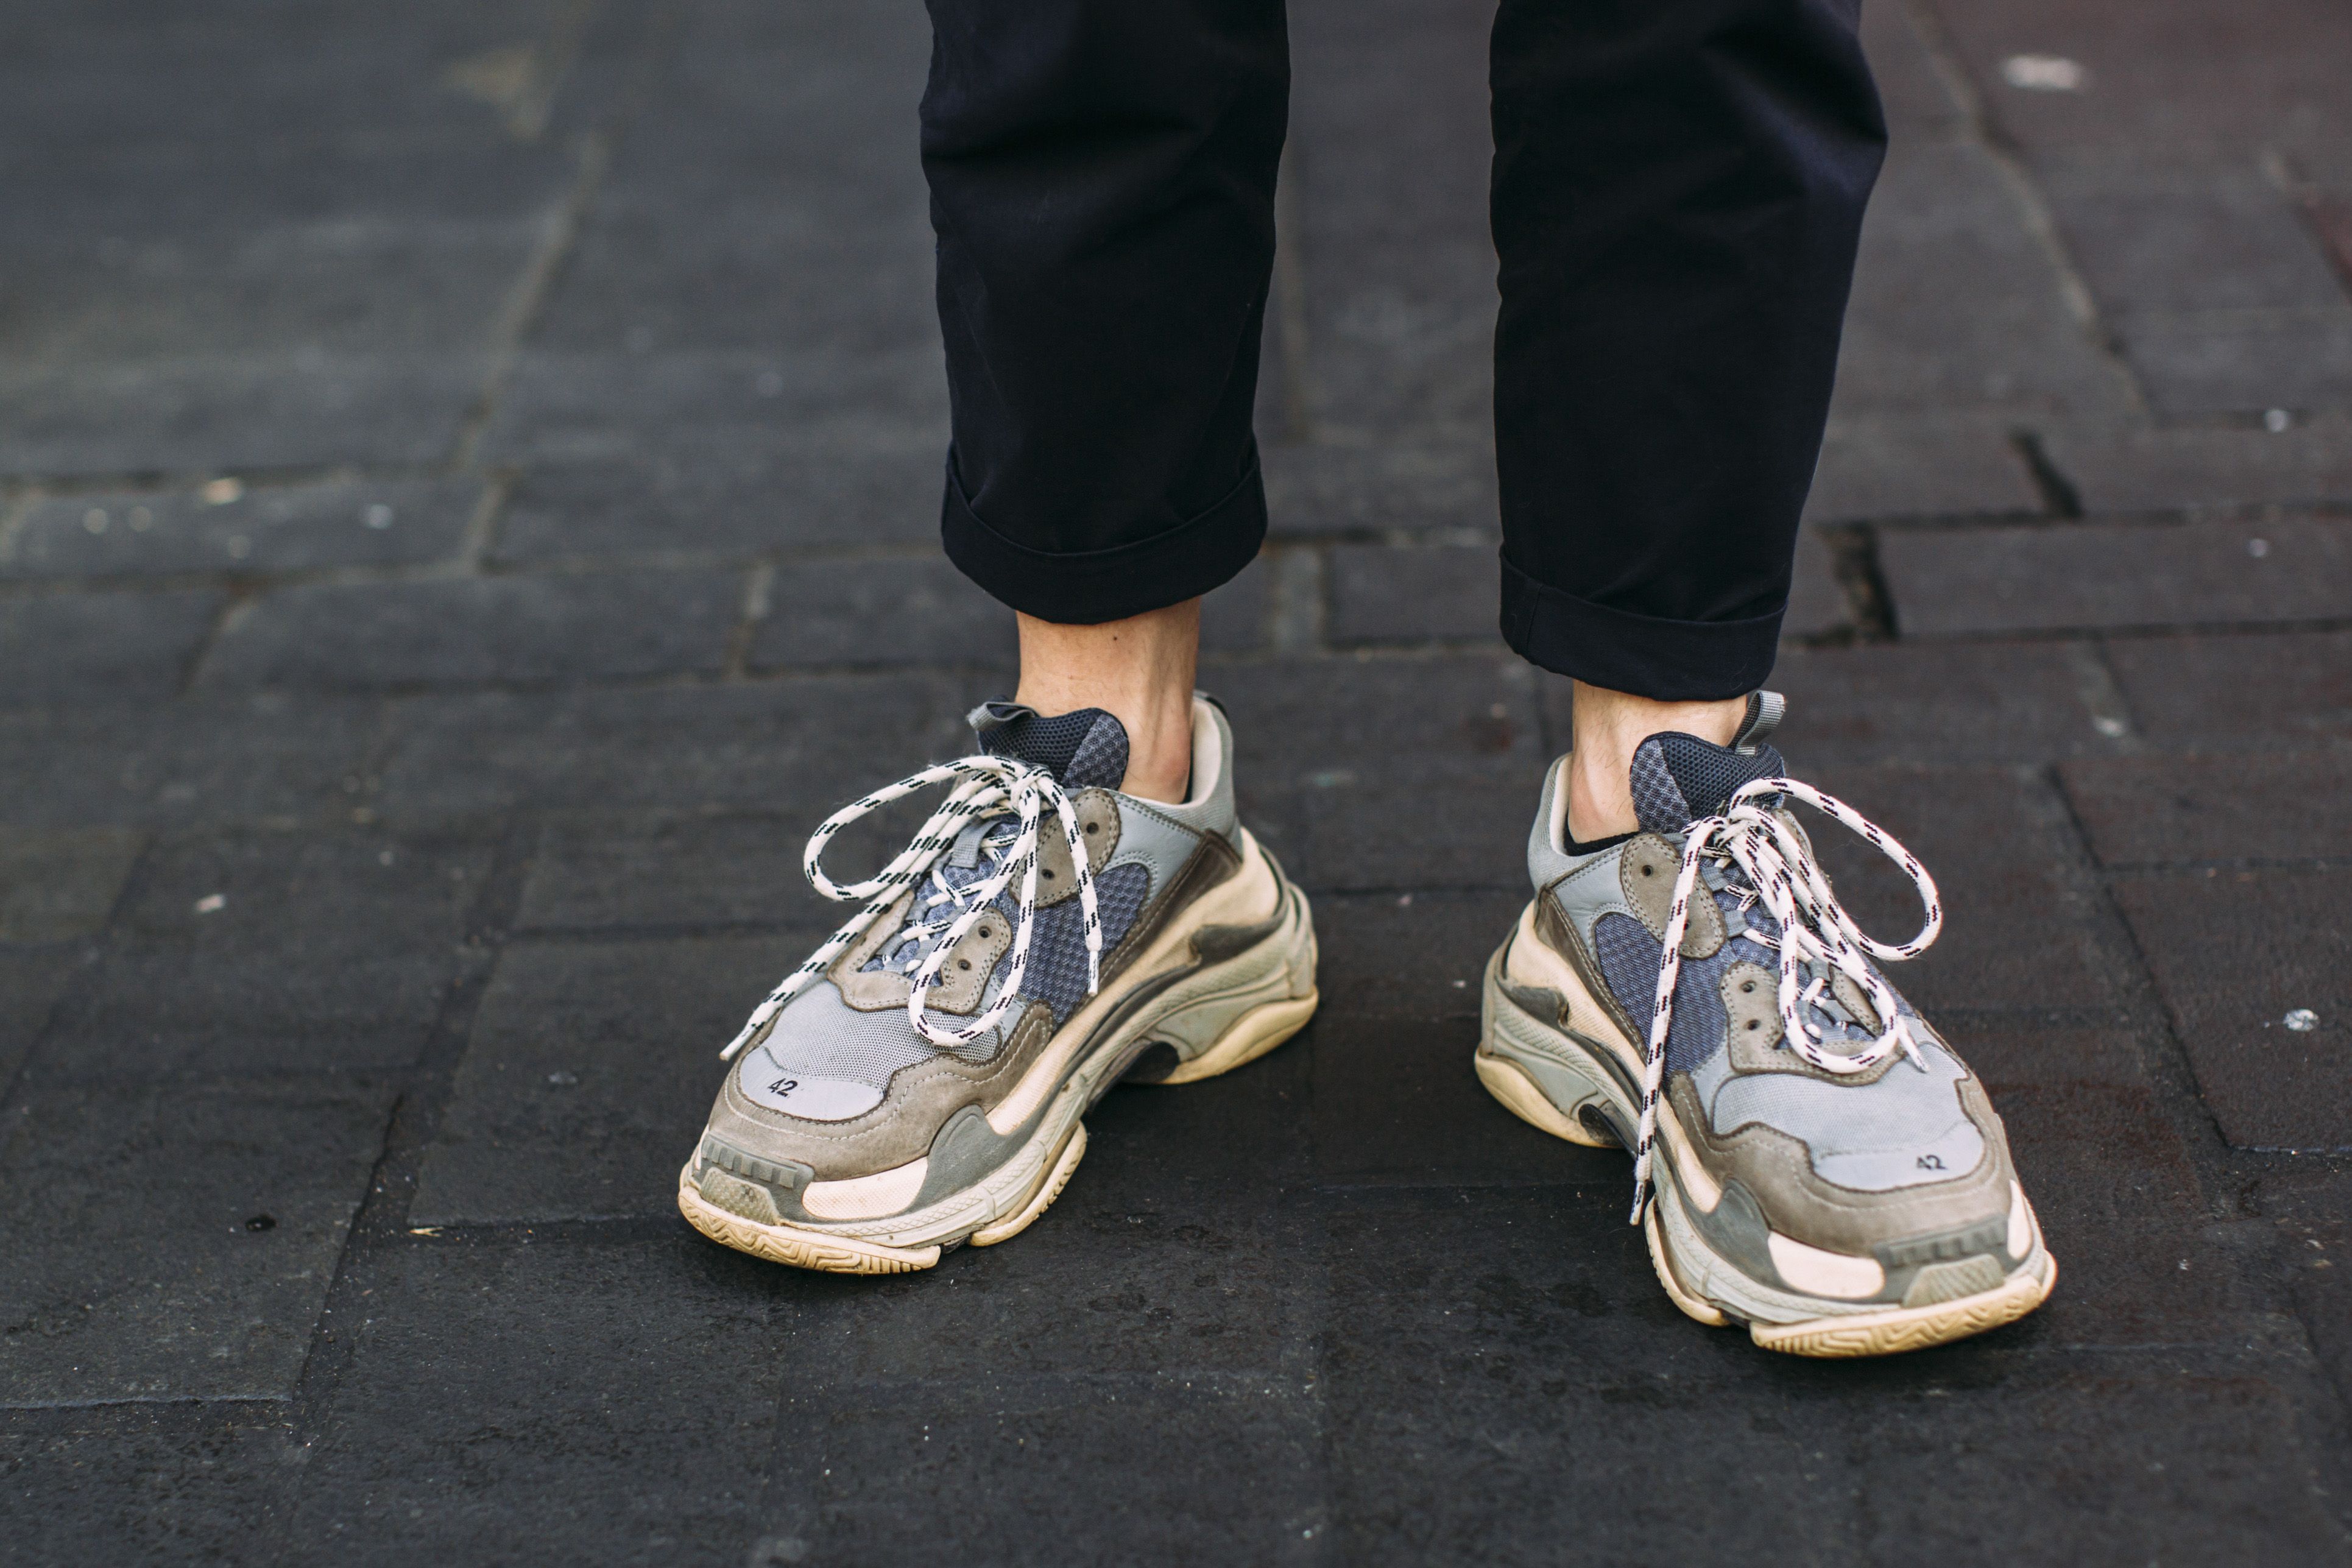 Las zapatillas chunky que calzarás en otoño - Los Adidas, Reebok o Nike